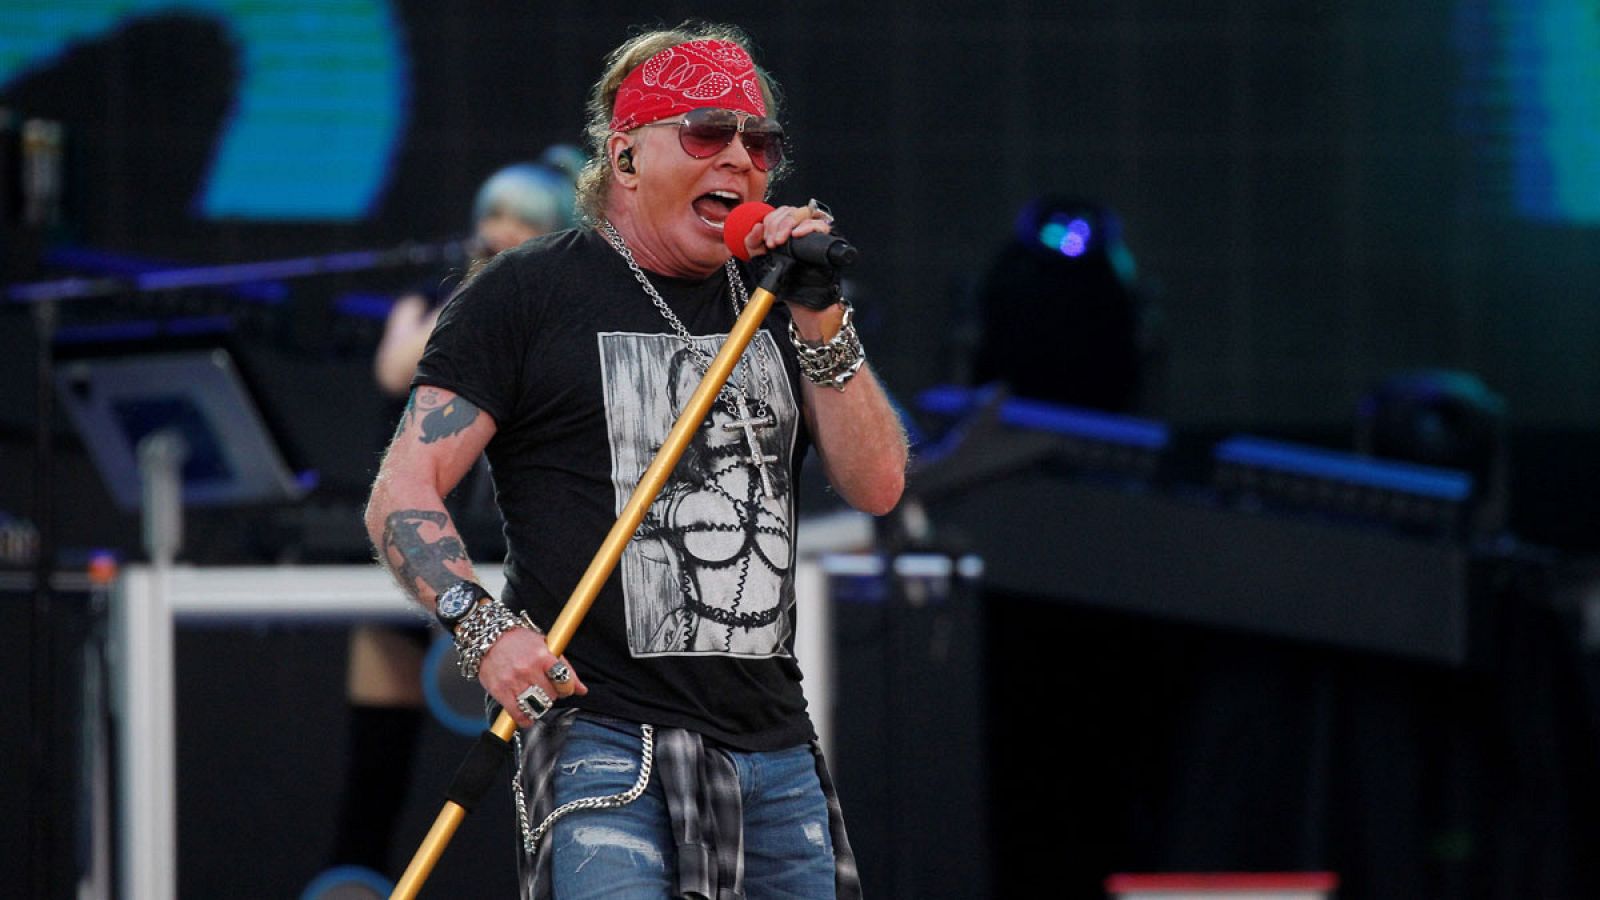 El cantante de la banda estadounidense Guns N' Roses, Axl Rose, durante el concierto de este viernes, 29 de junio de 2018, en la Caja Magica, en Madrid.